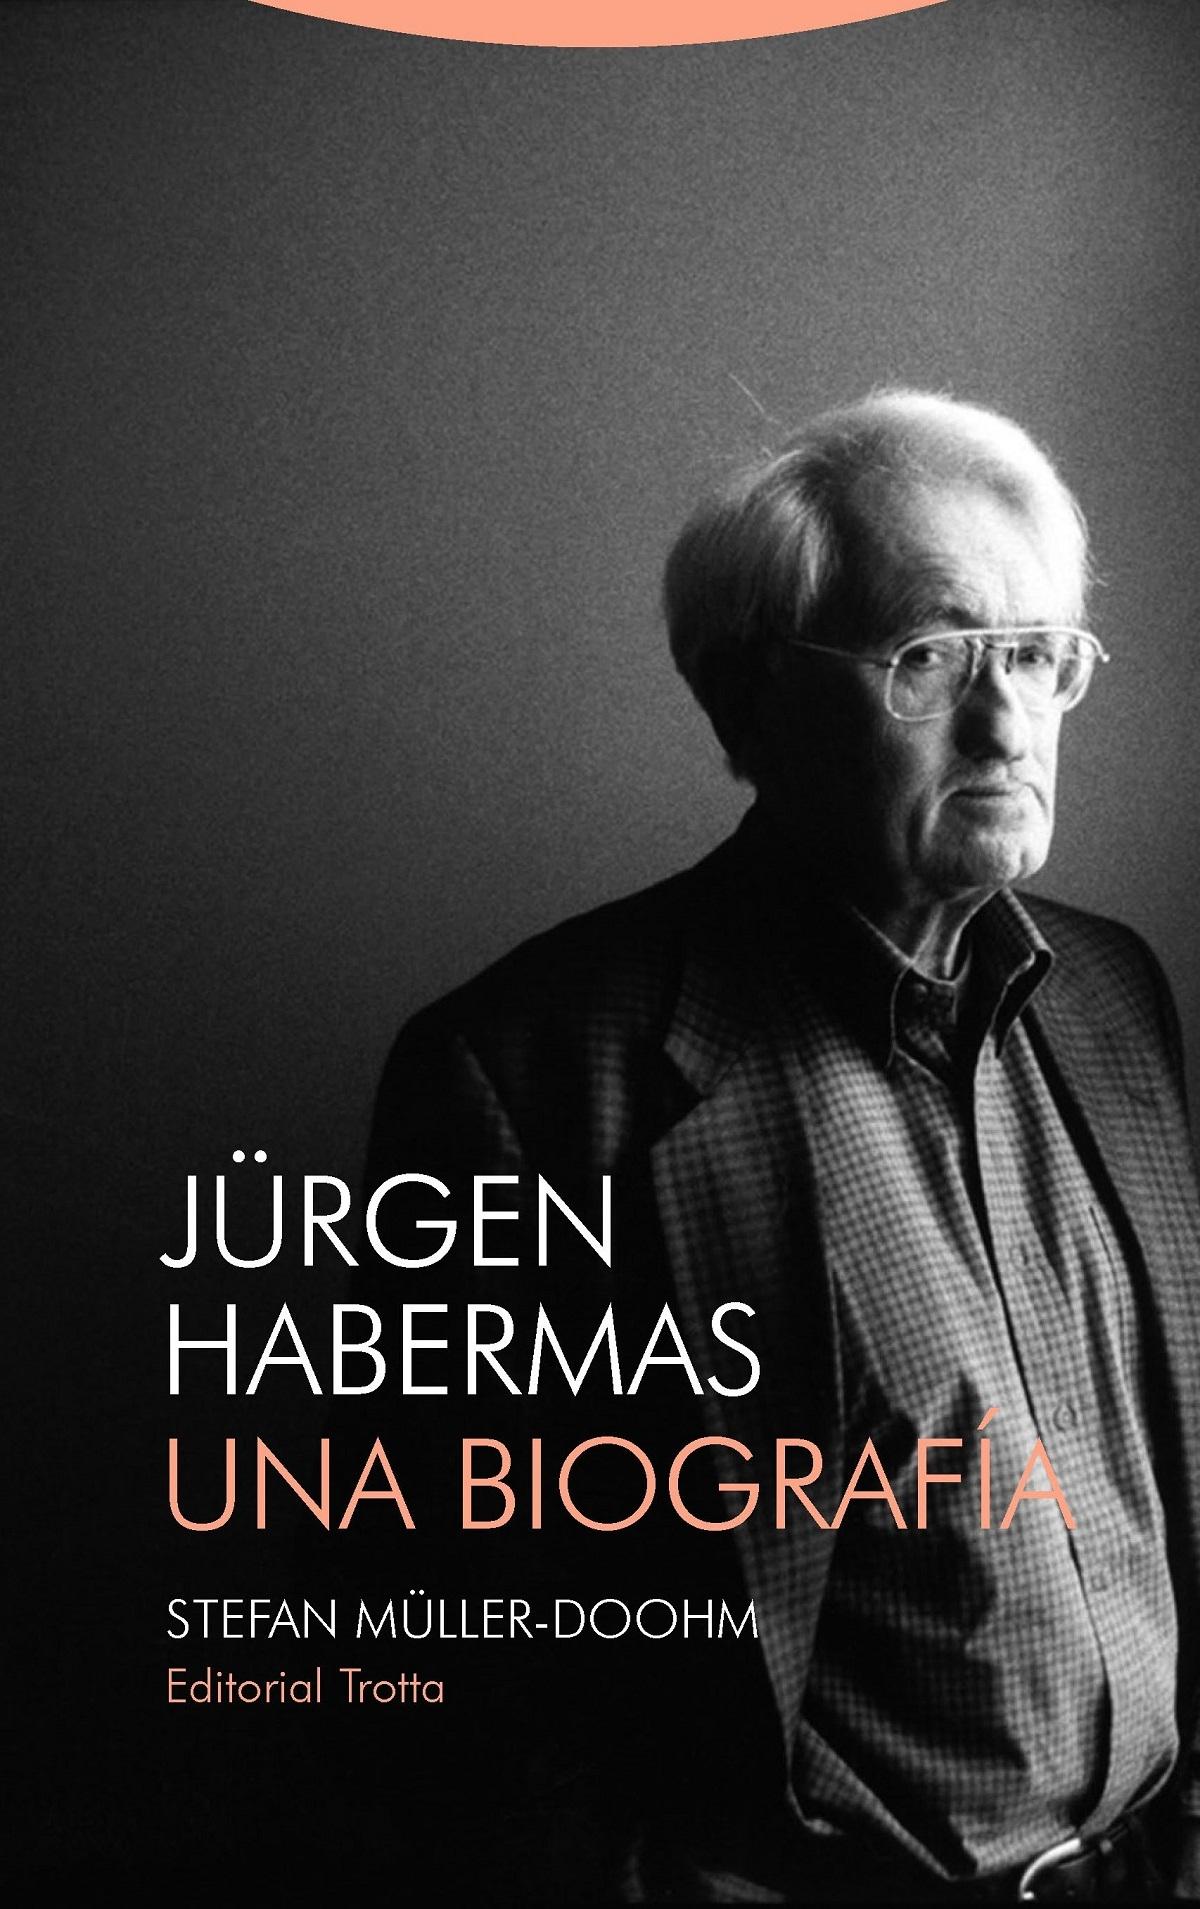 Jürgen Habermas "Una biografía"